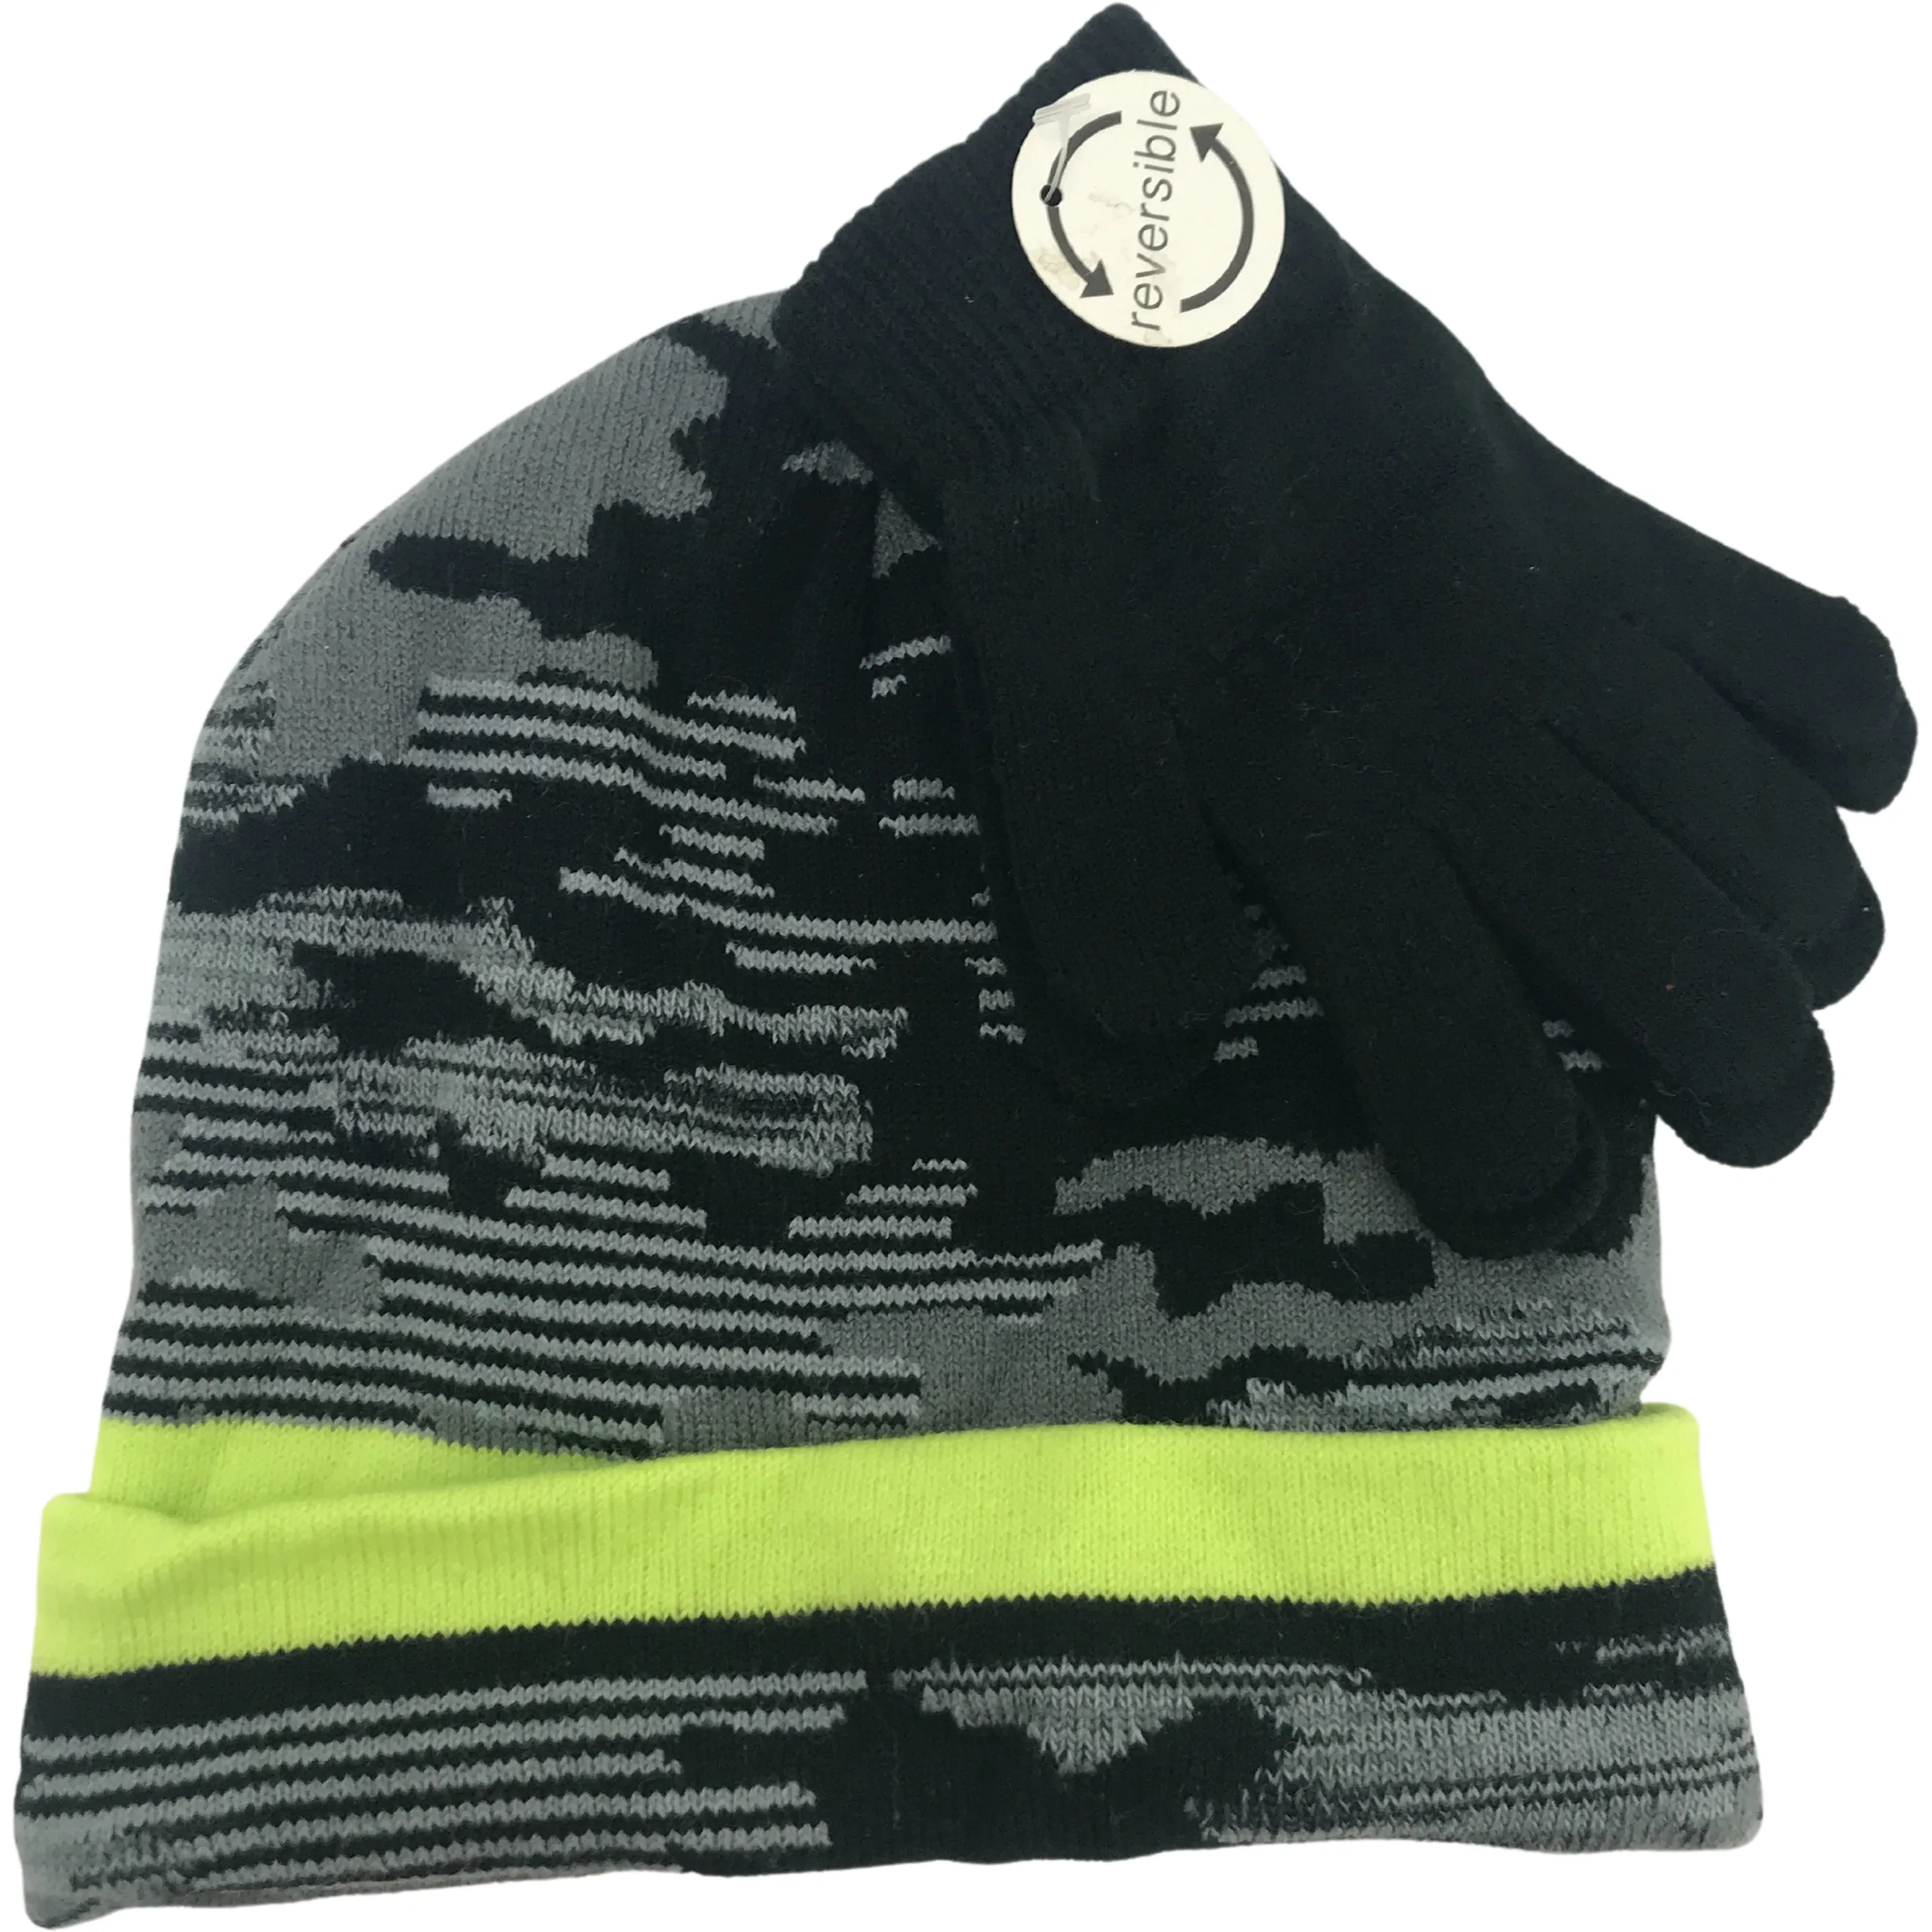 Children's Winter Hat & Glove Set / Boy's Hat Set / Lightweight Gloves / Size 8-20